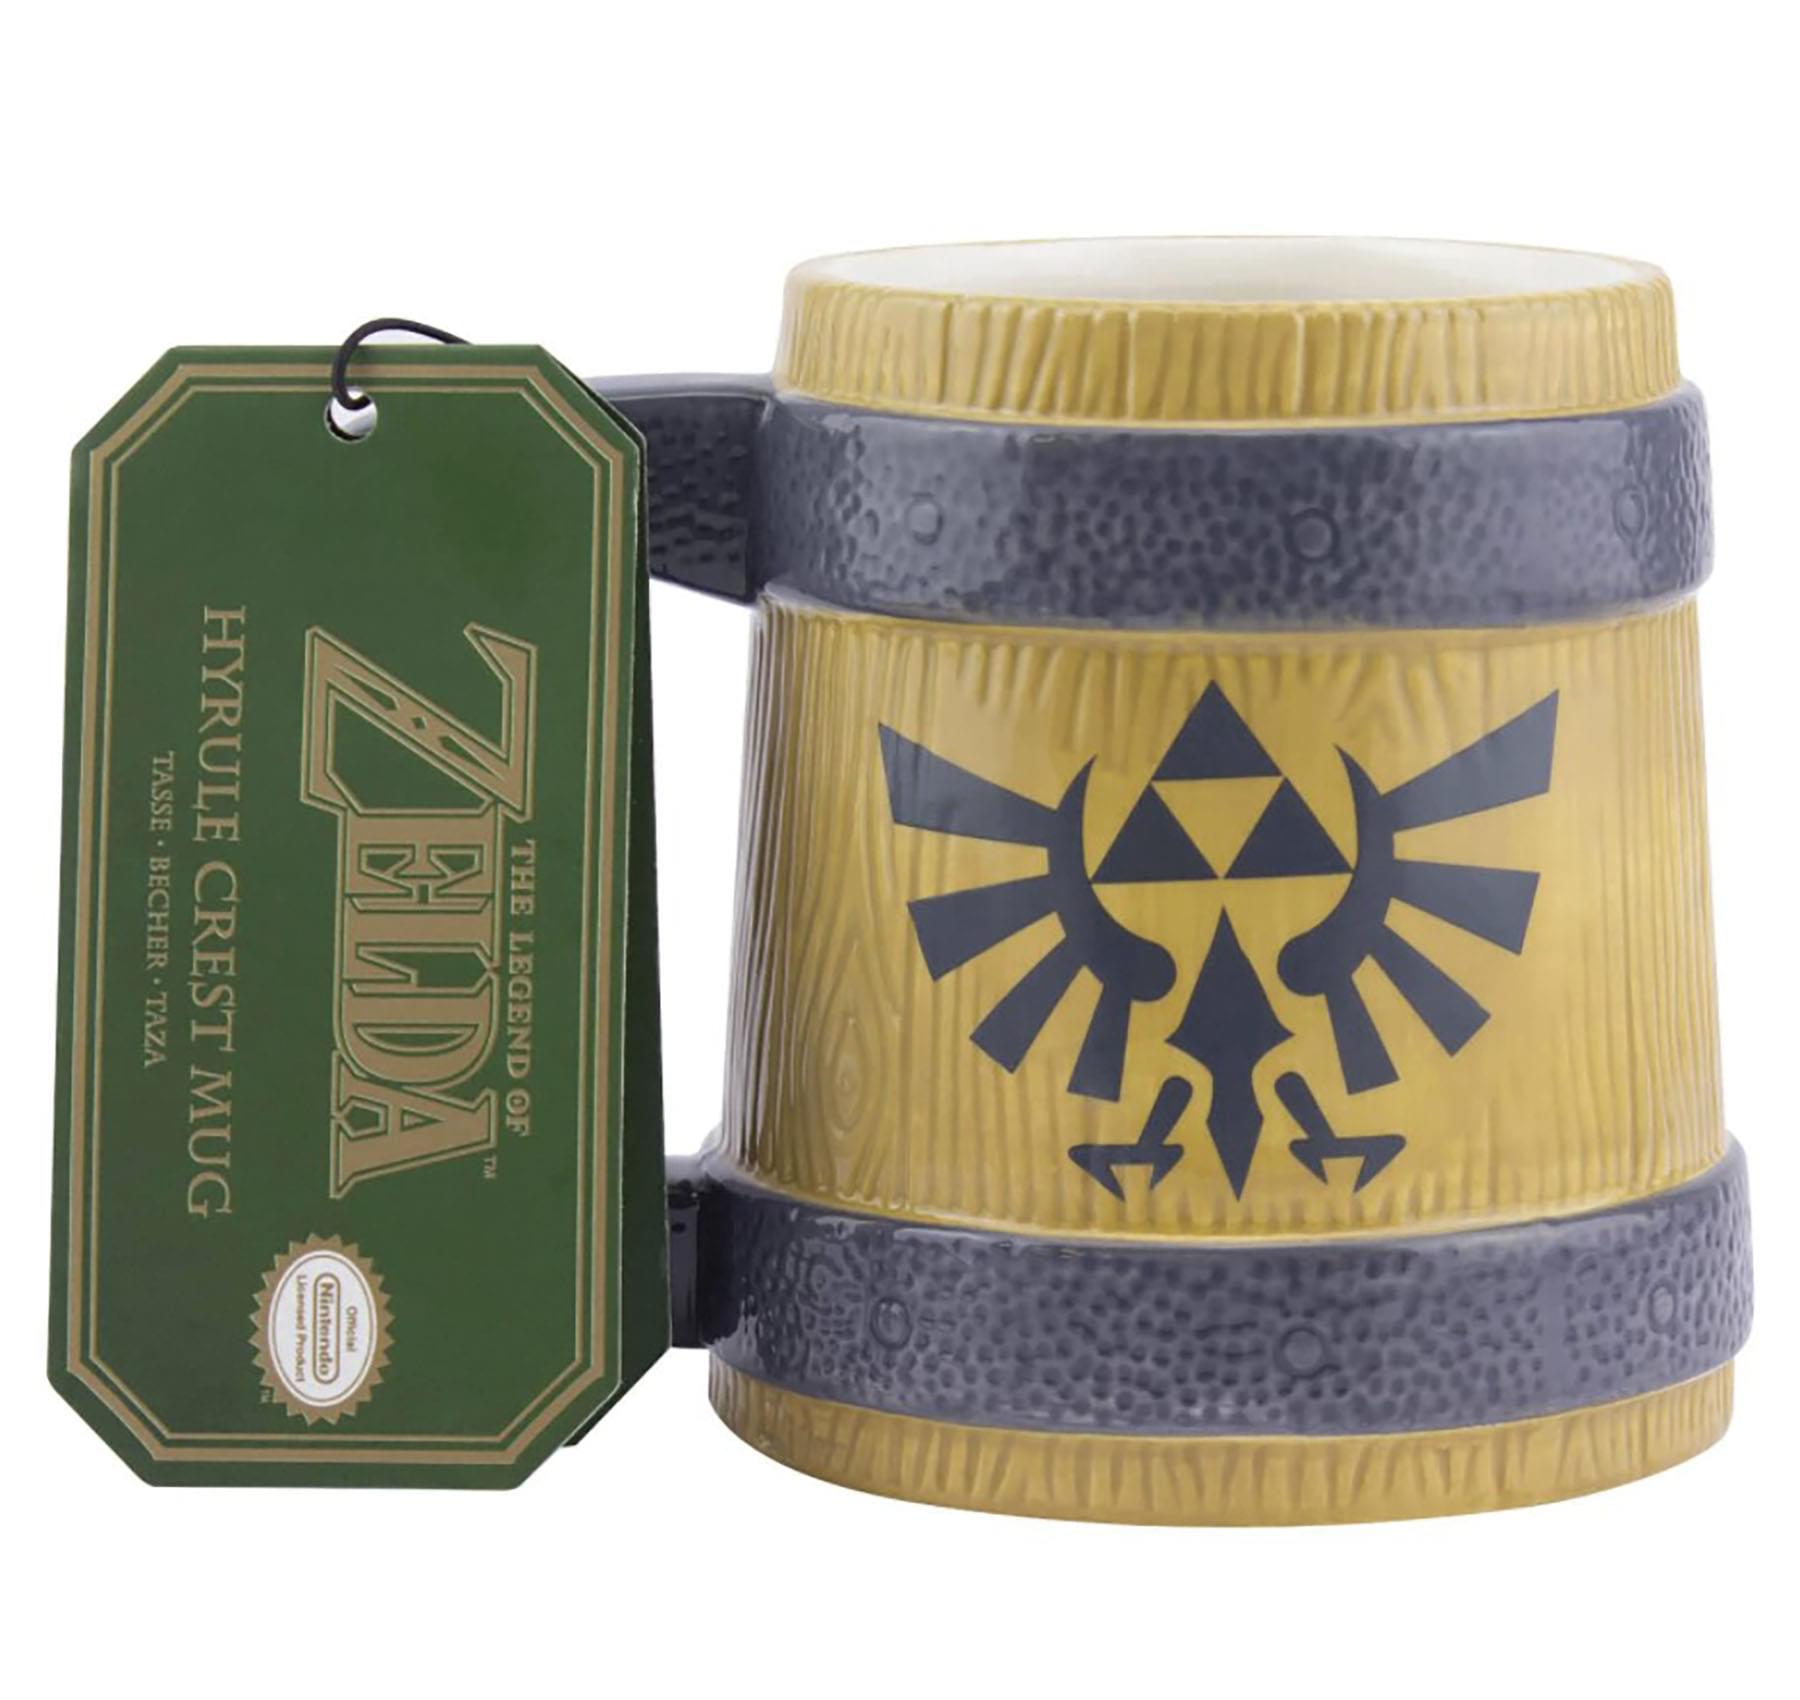 The Legend of Zelda Hyrule Crest Mug